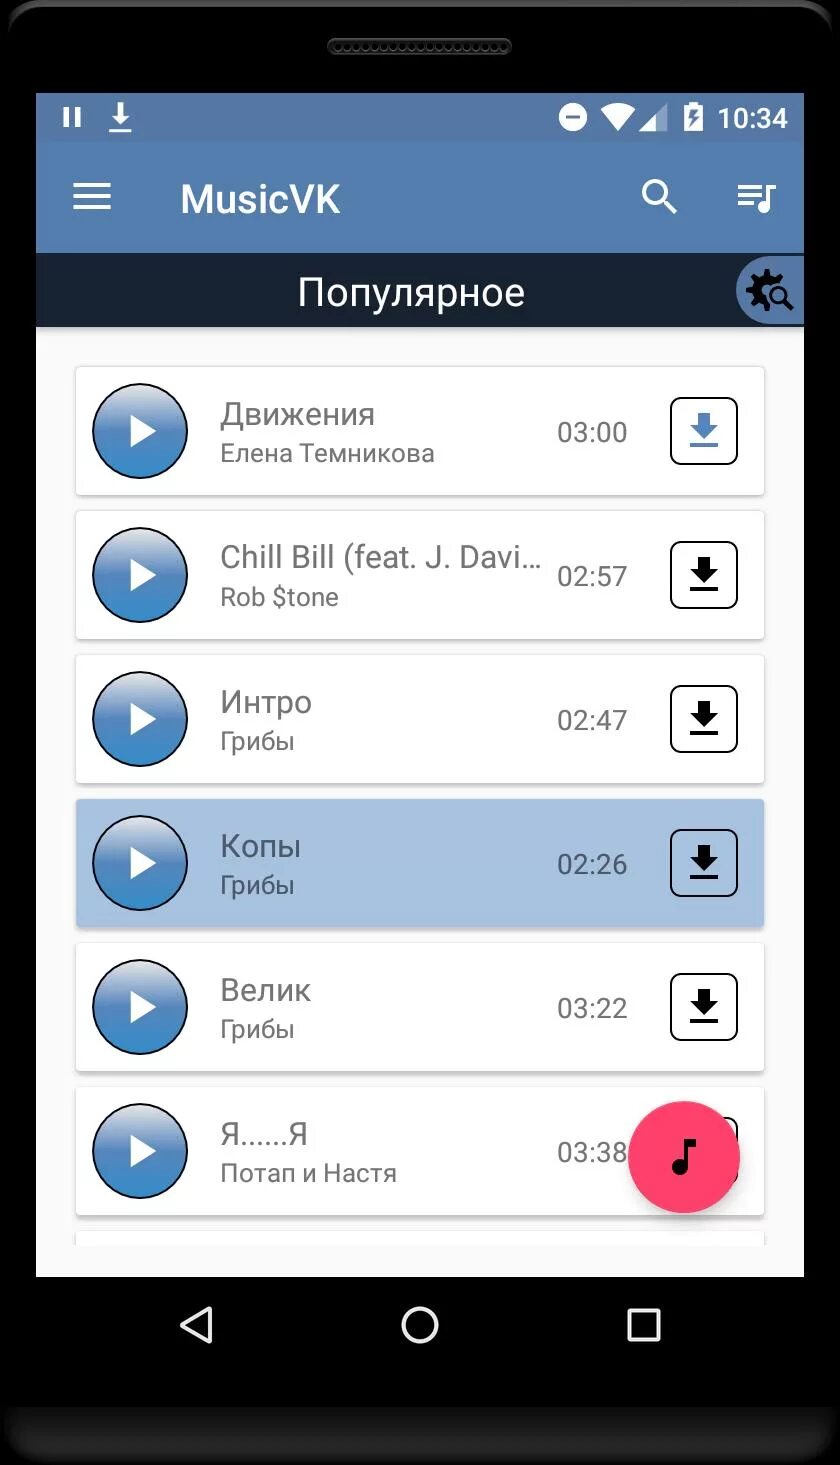 Https music net. Приложения для скачивания музыки из ВК на компьютер. Музыка ВКОНТАКТЕ. ВК ВКОНТАКТЕ музыка. VKMUSIC приложение для Android.